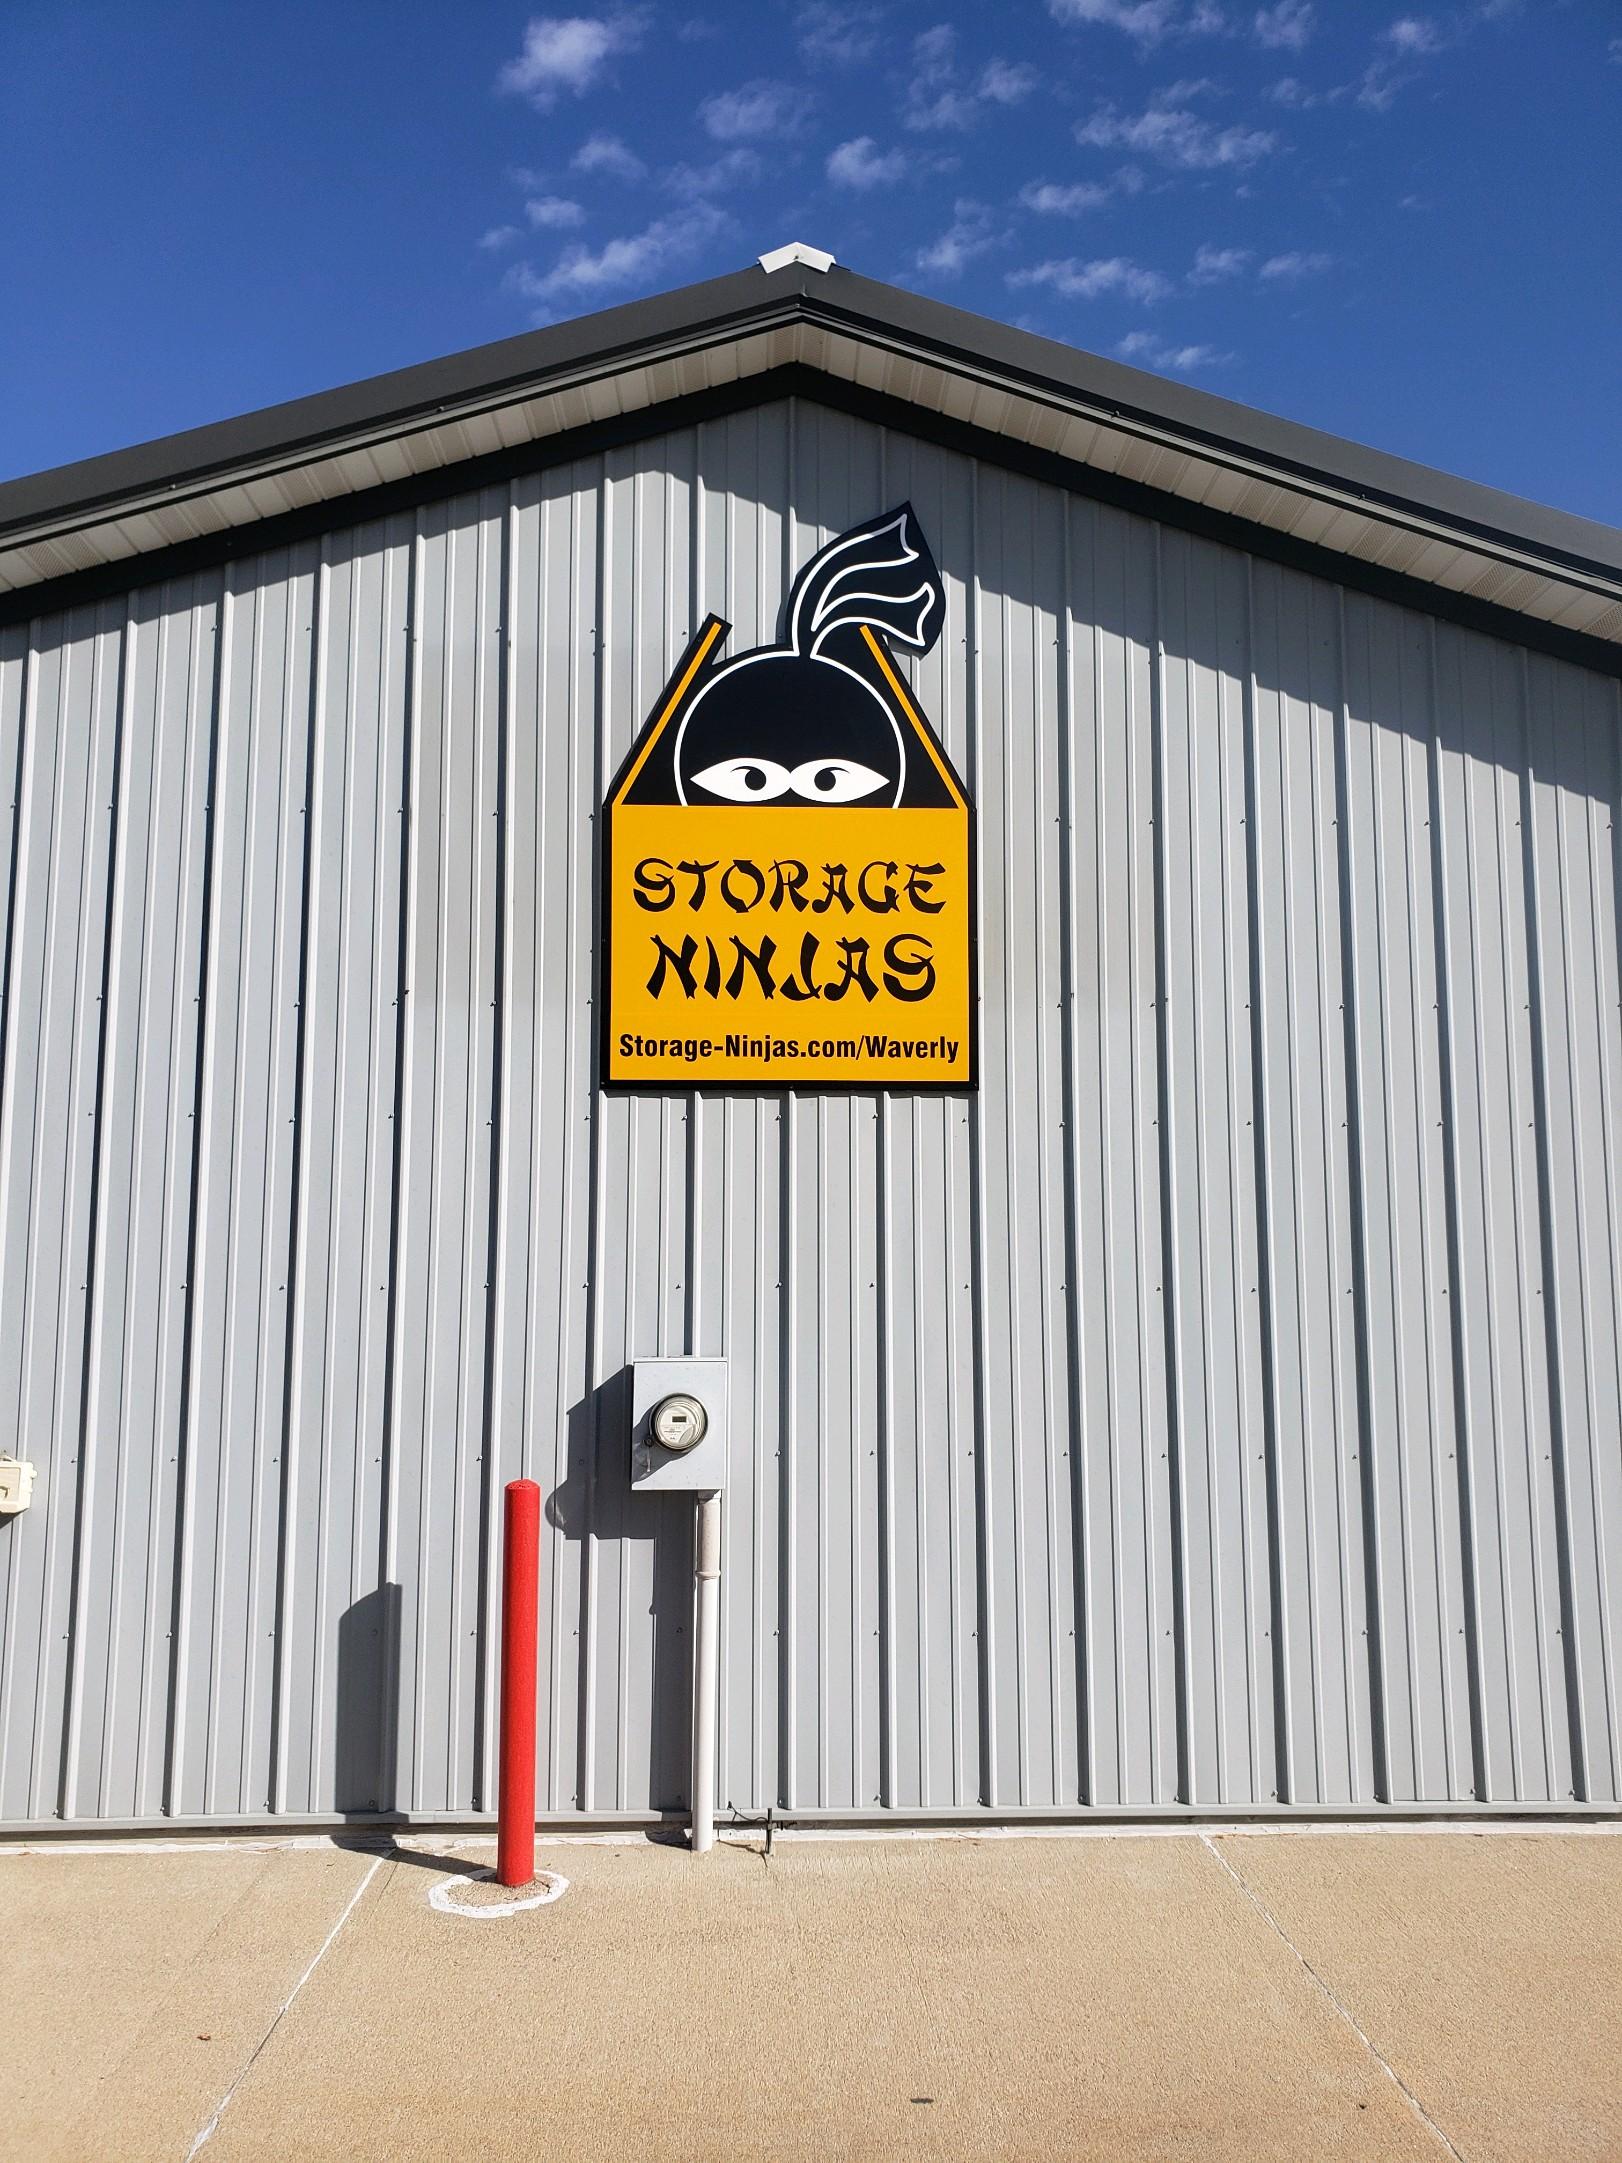 Storage Ninjas has a third self-storage facility in Waverly, Nebraska